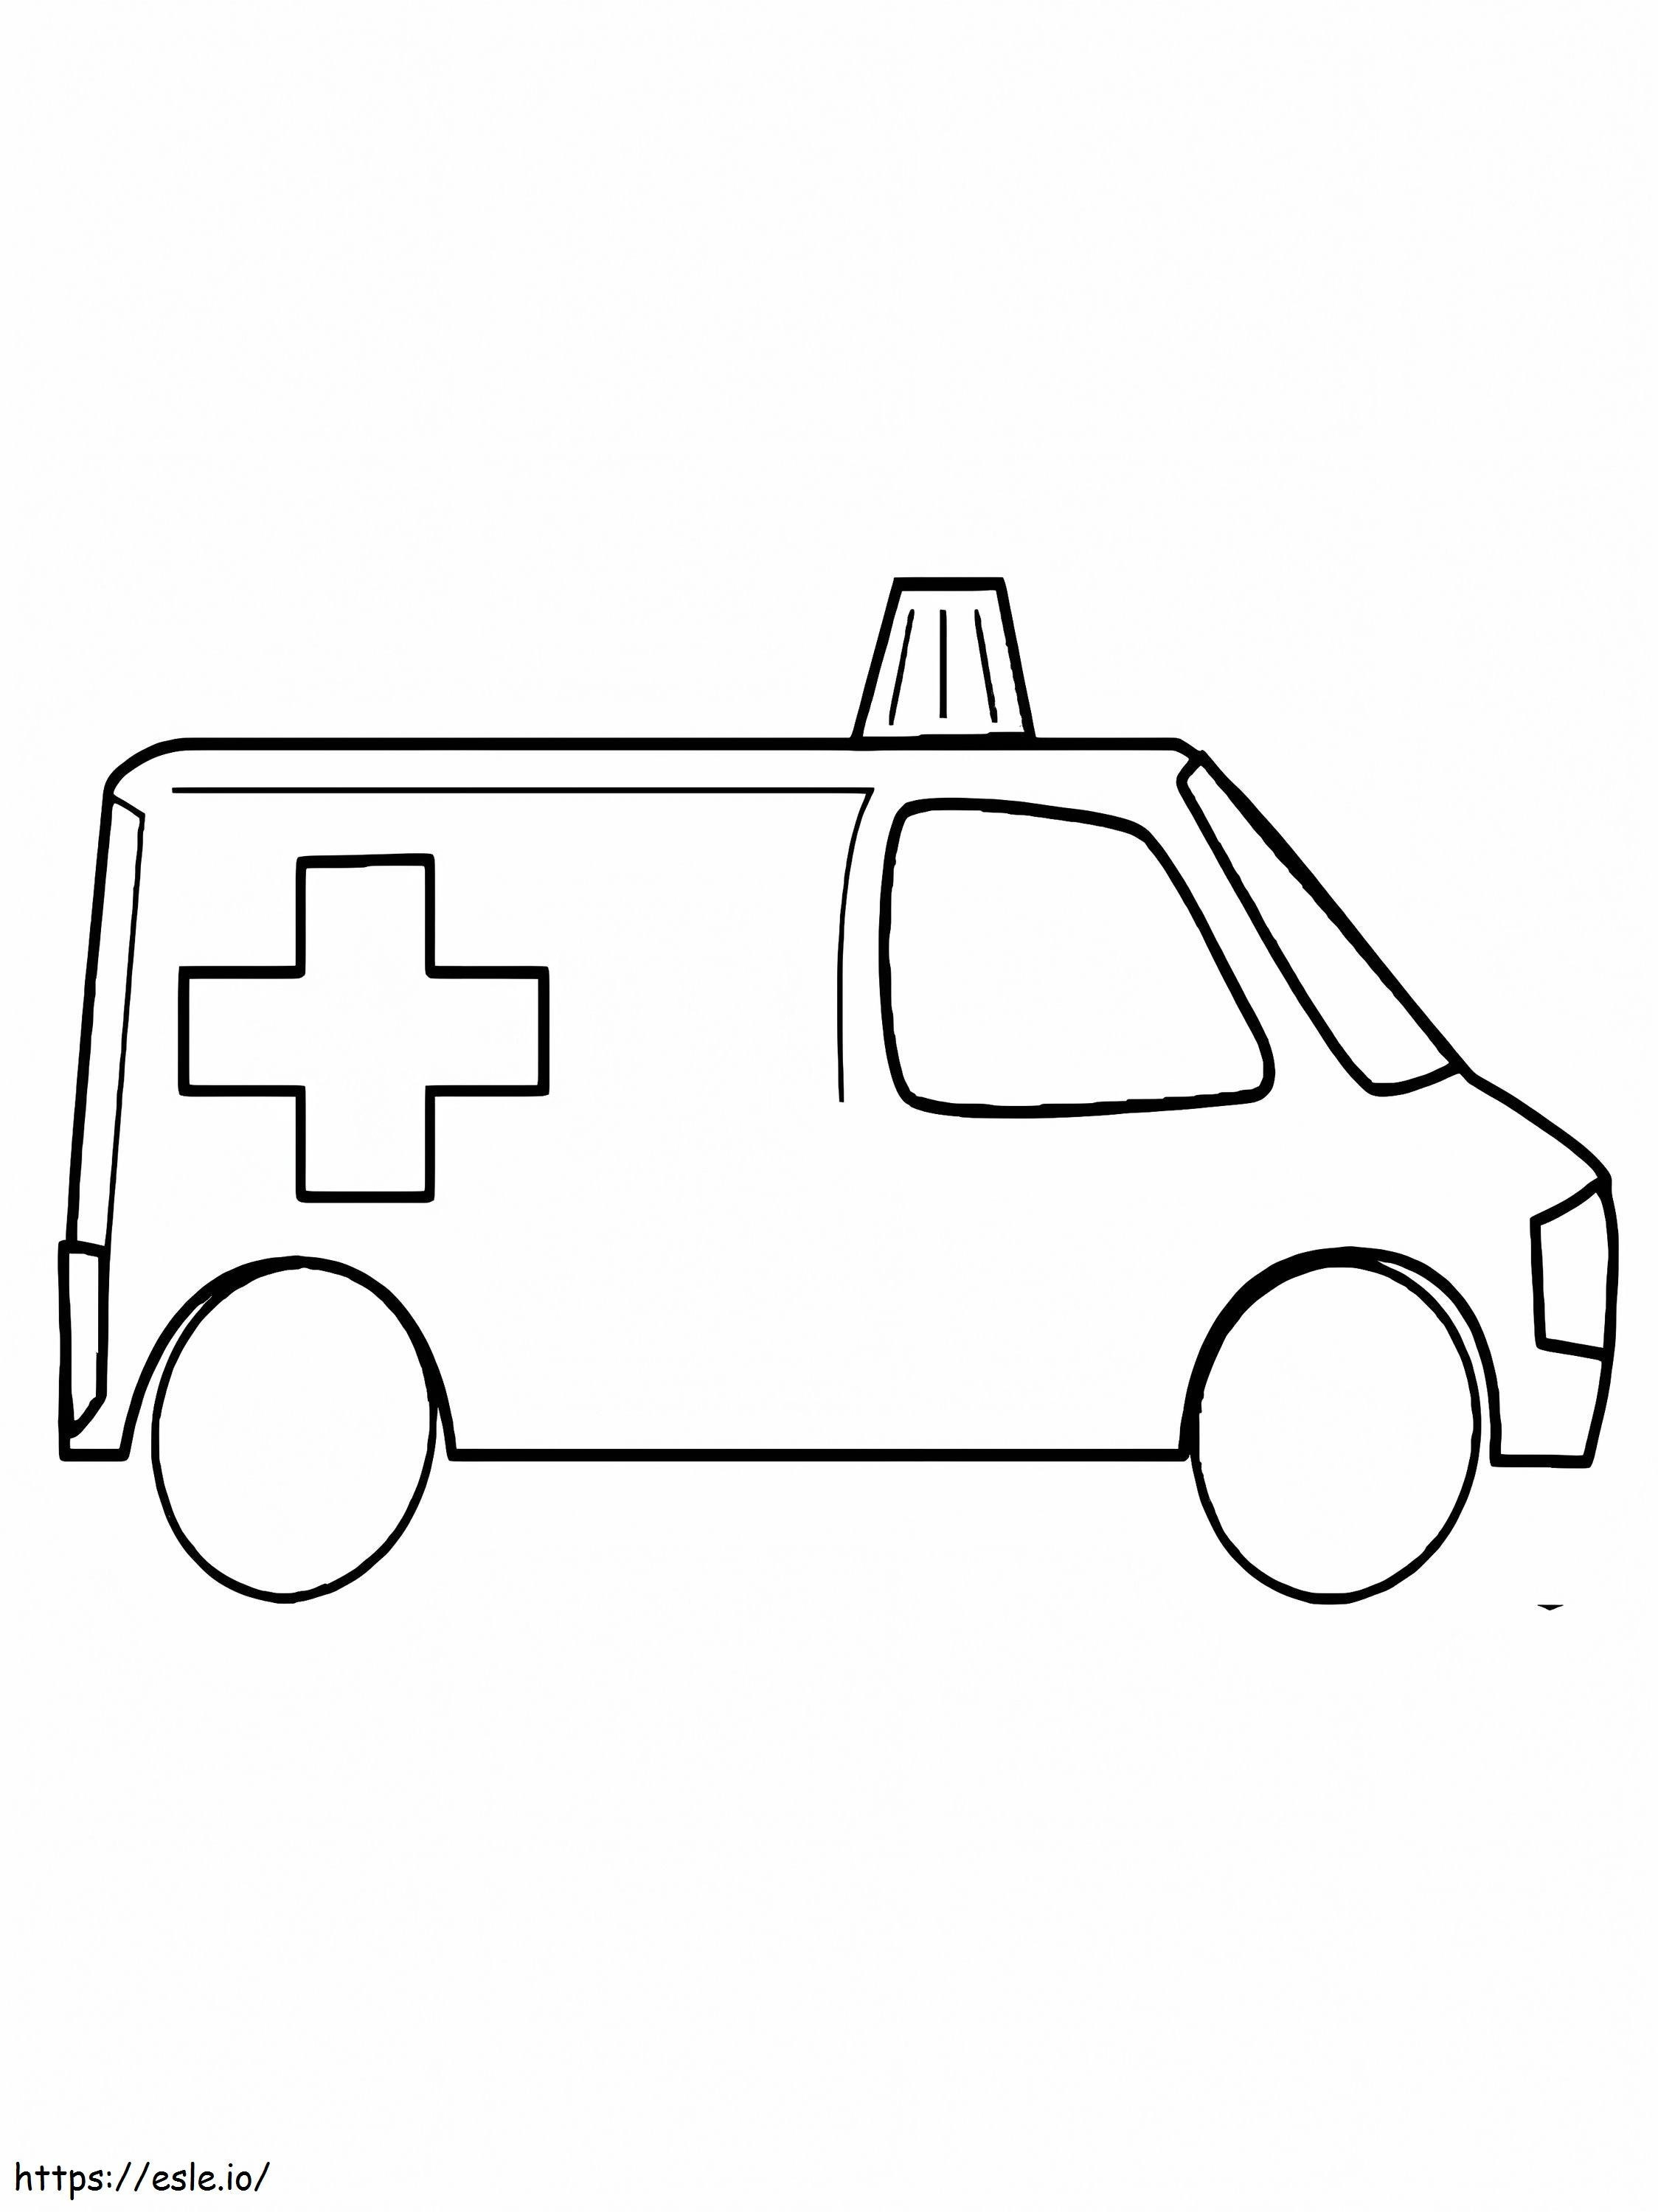 Krankenwagen 11 ausmalbilder